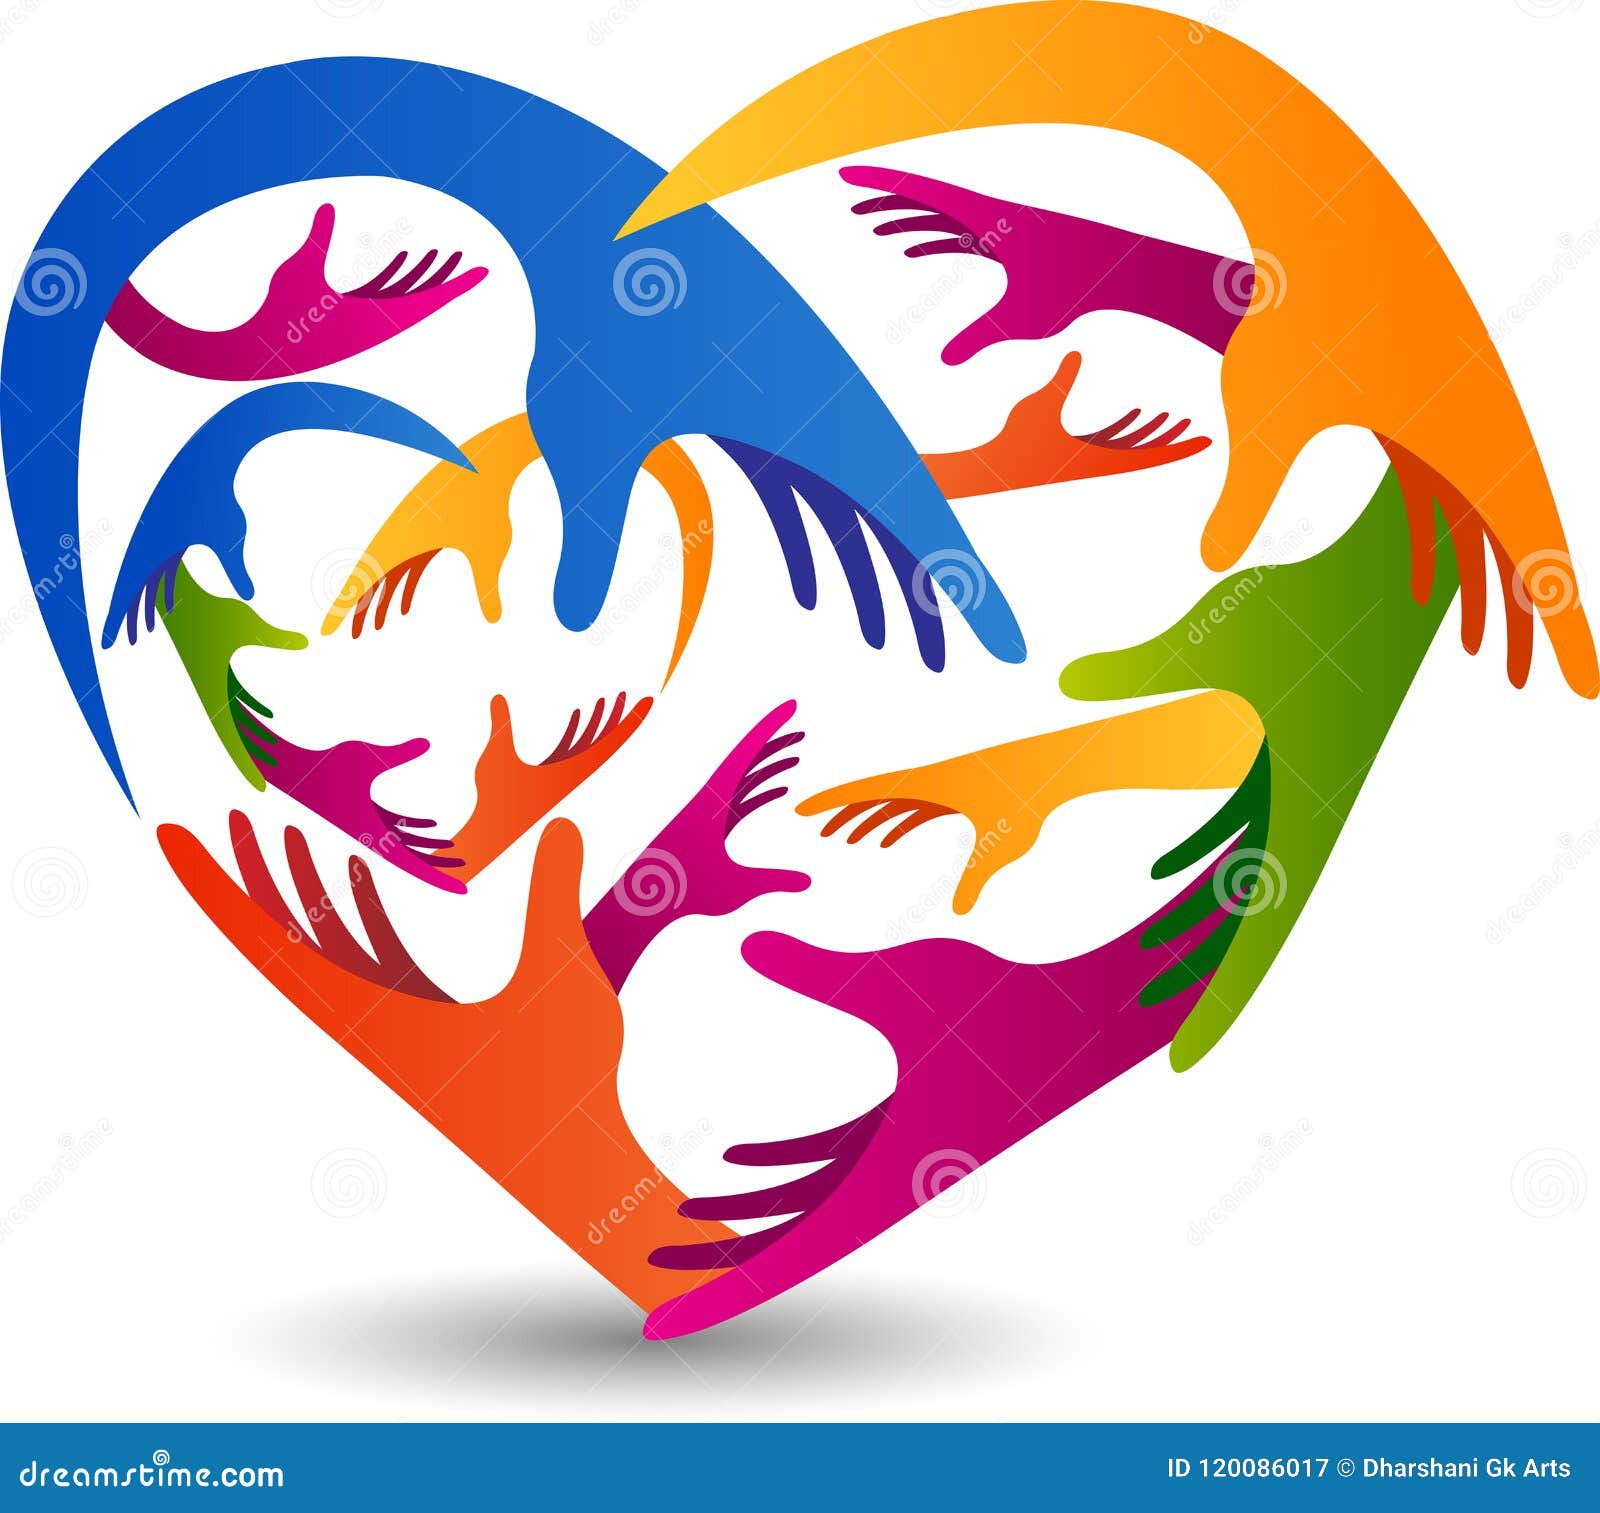 Love hands logo stock vector. Illustration of children - 120086017